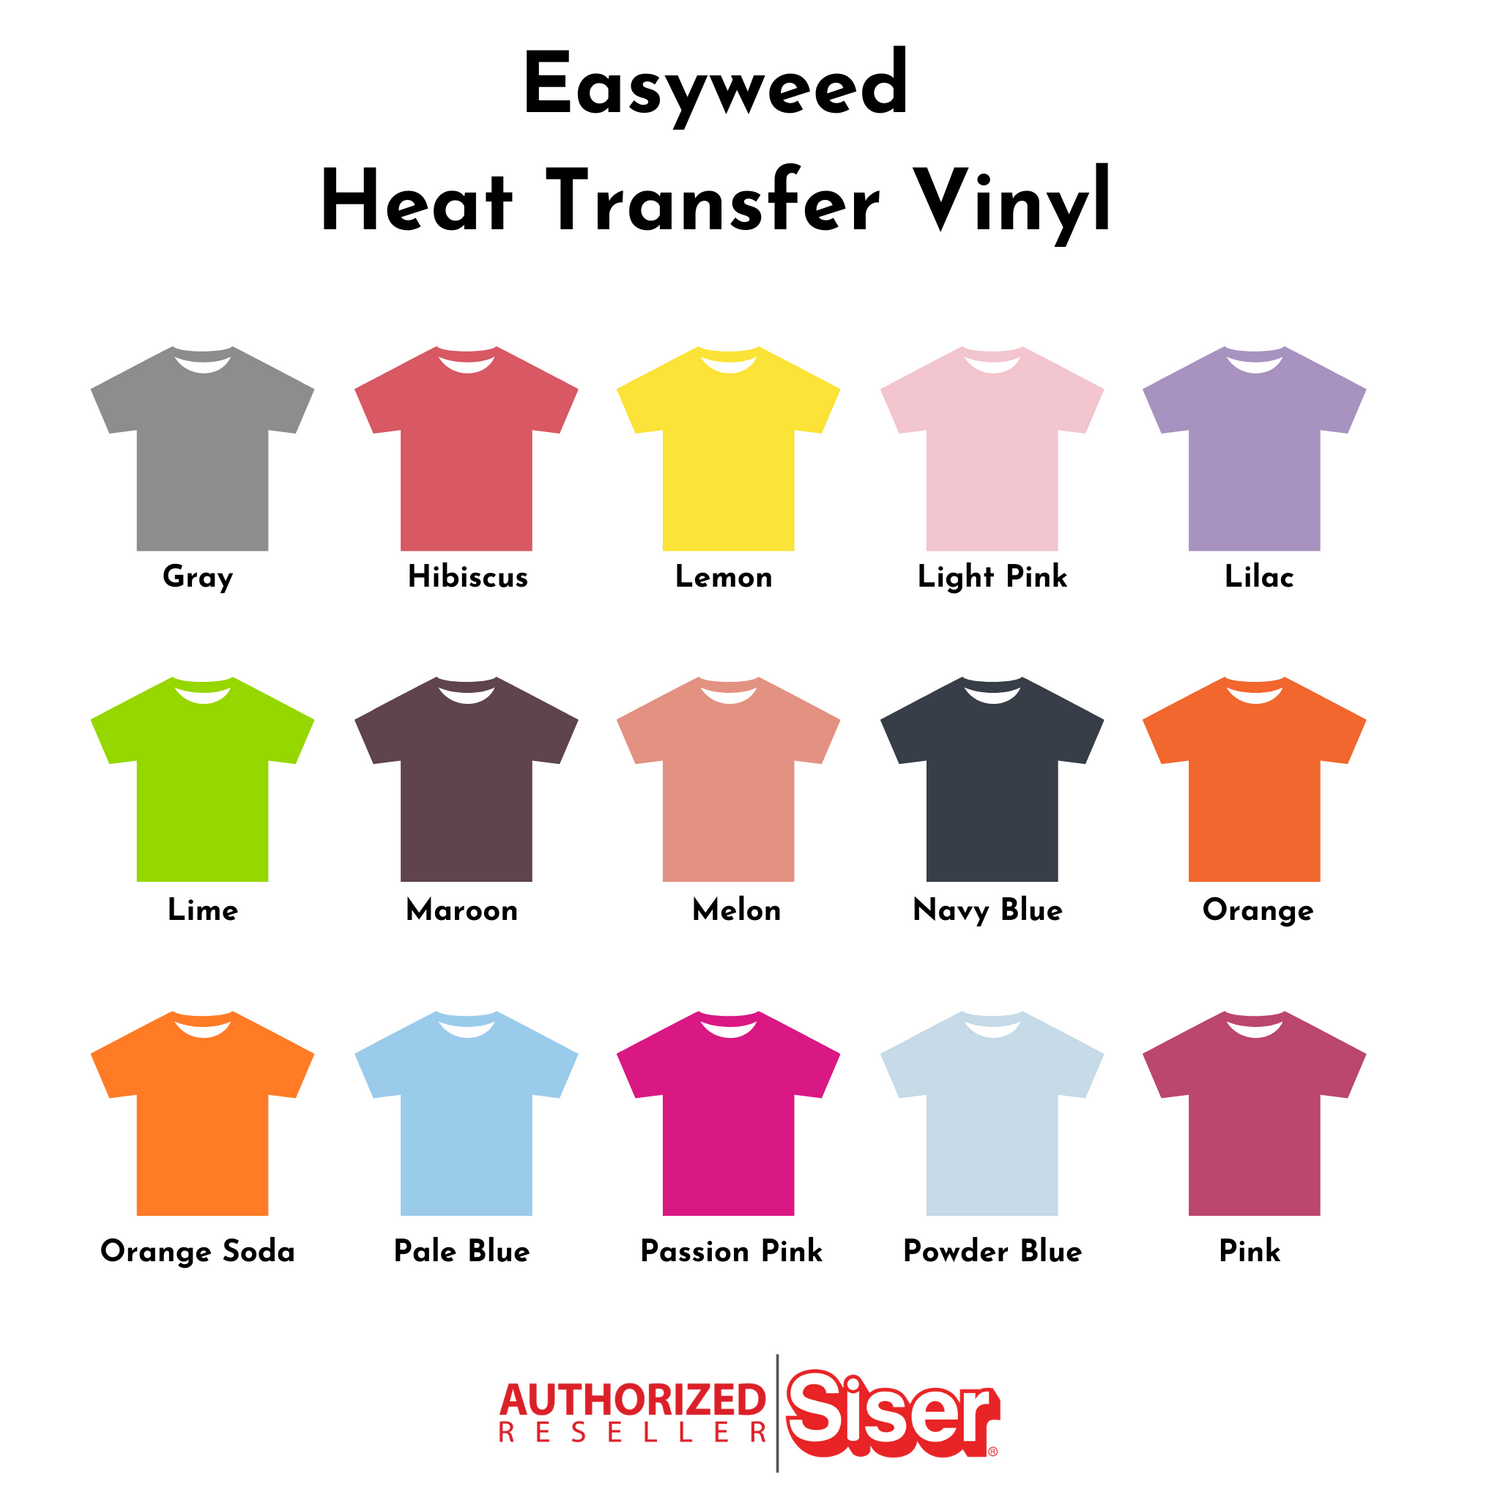 Siser EasyWeed HTV 12x15 Sheets Iron-On Vinyl Heat Transfer Vinyl Pic